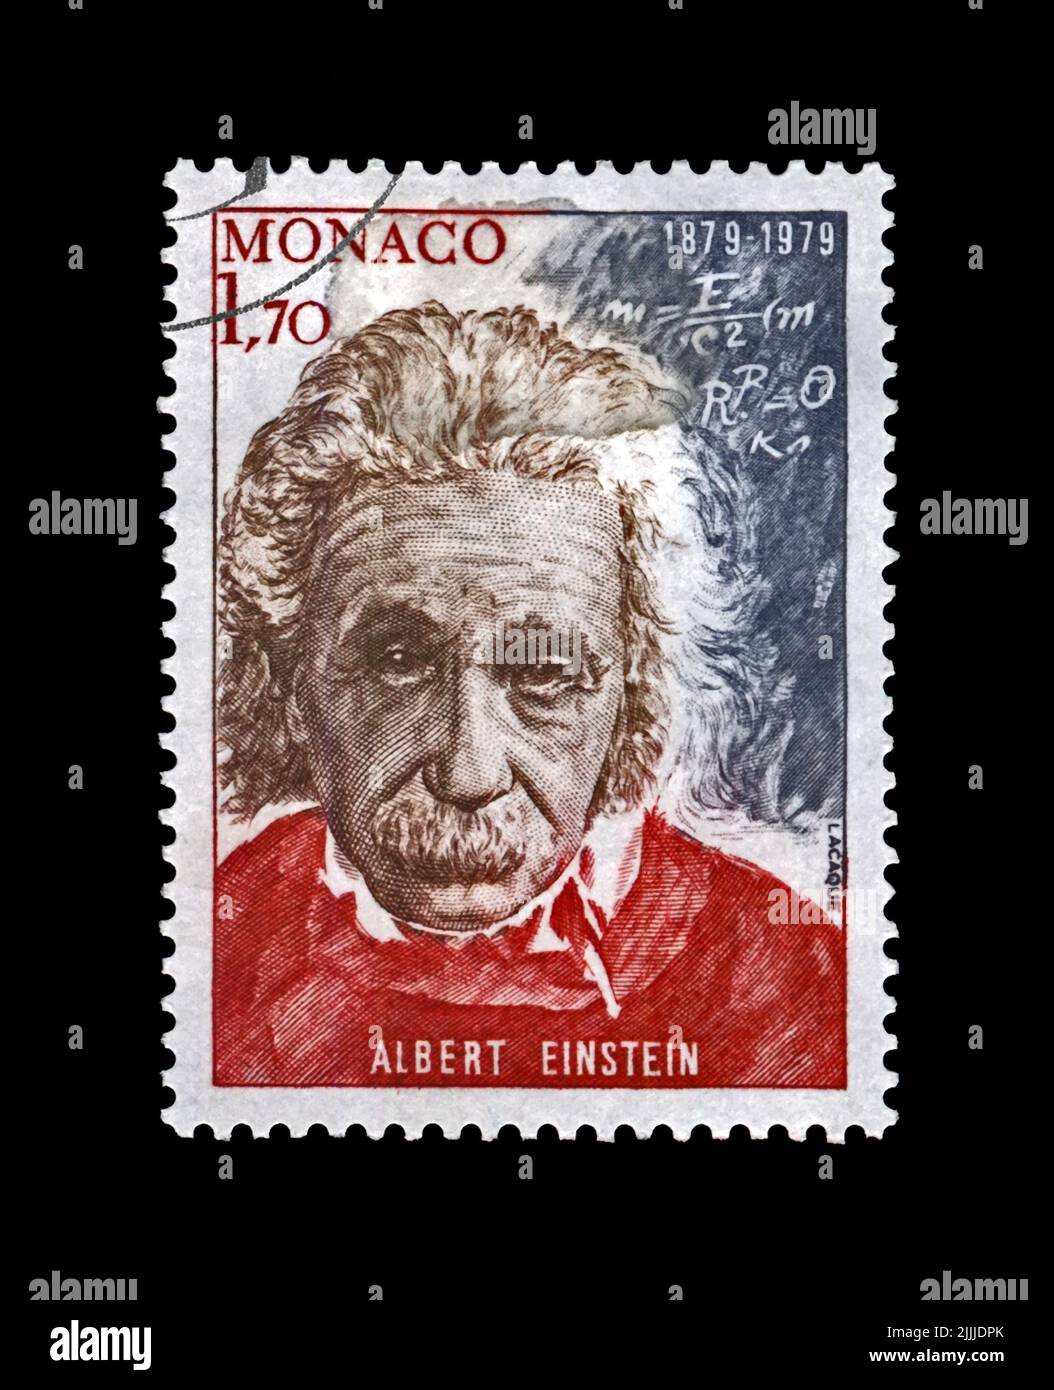 Albert Einstein (1879-1955), berühmter Wissenschaftler, Physiker, Nobelpreisträger, abgesagte Briefmarke in Monaco Stockfoto